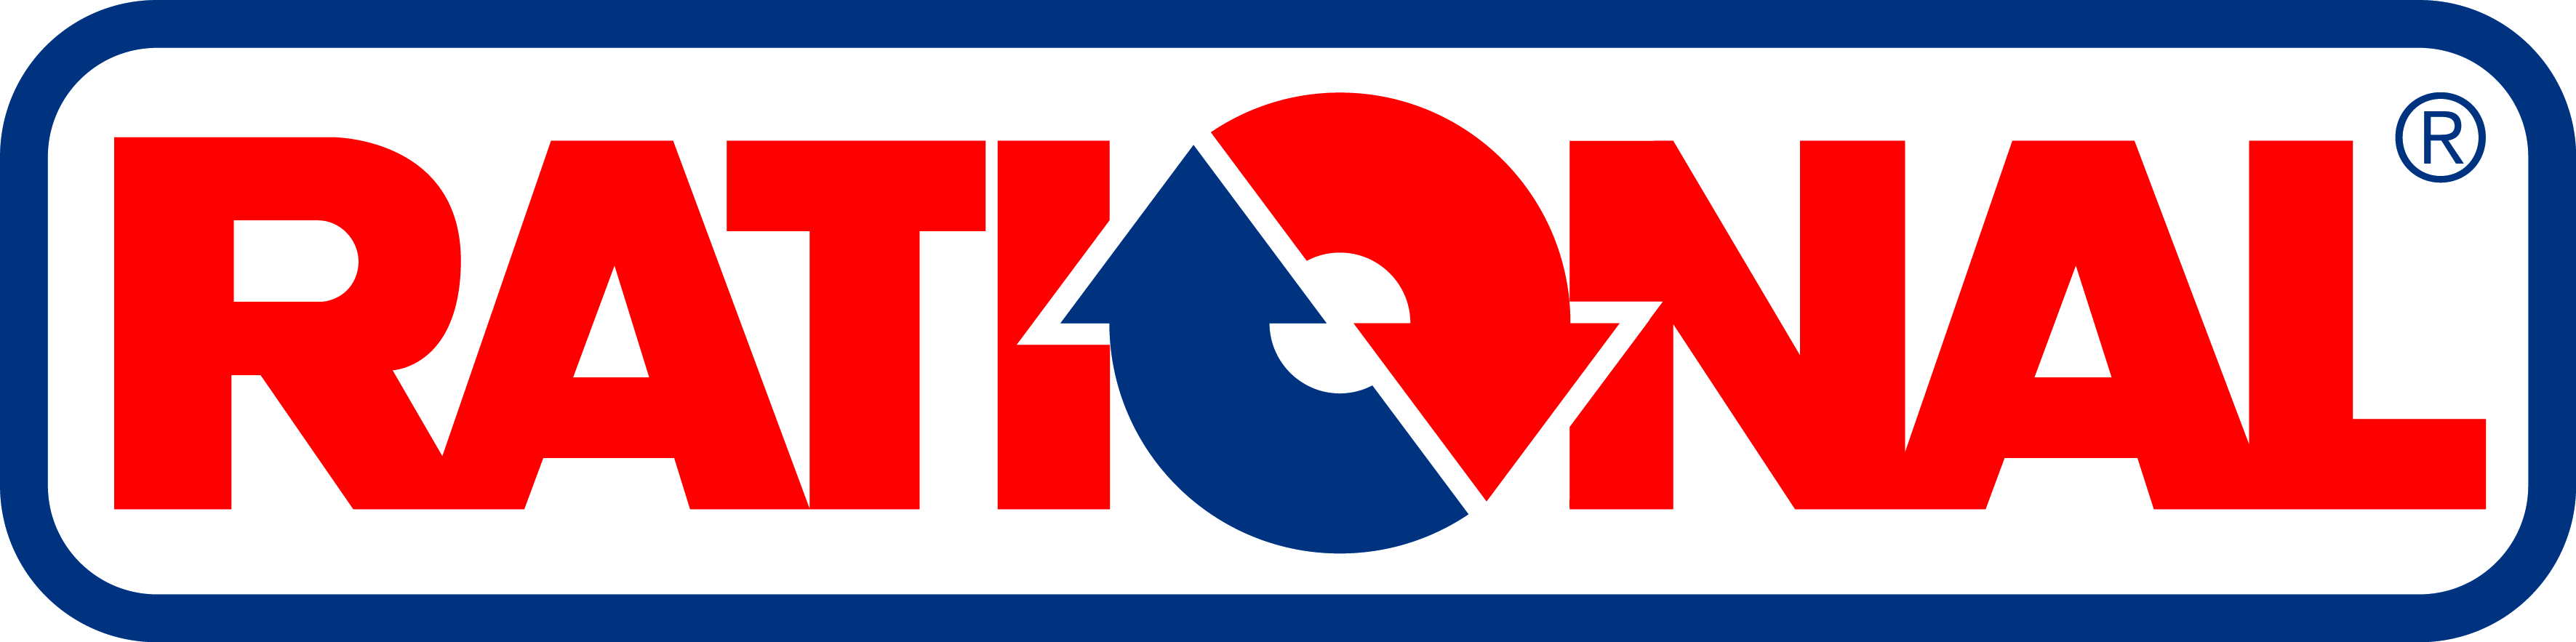 Rational logo HD